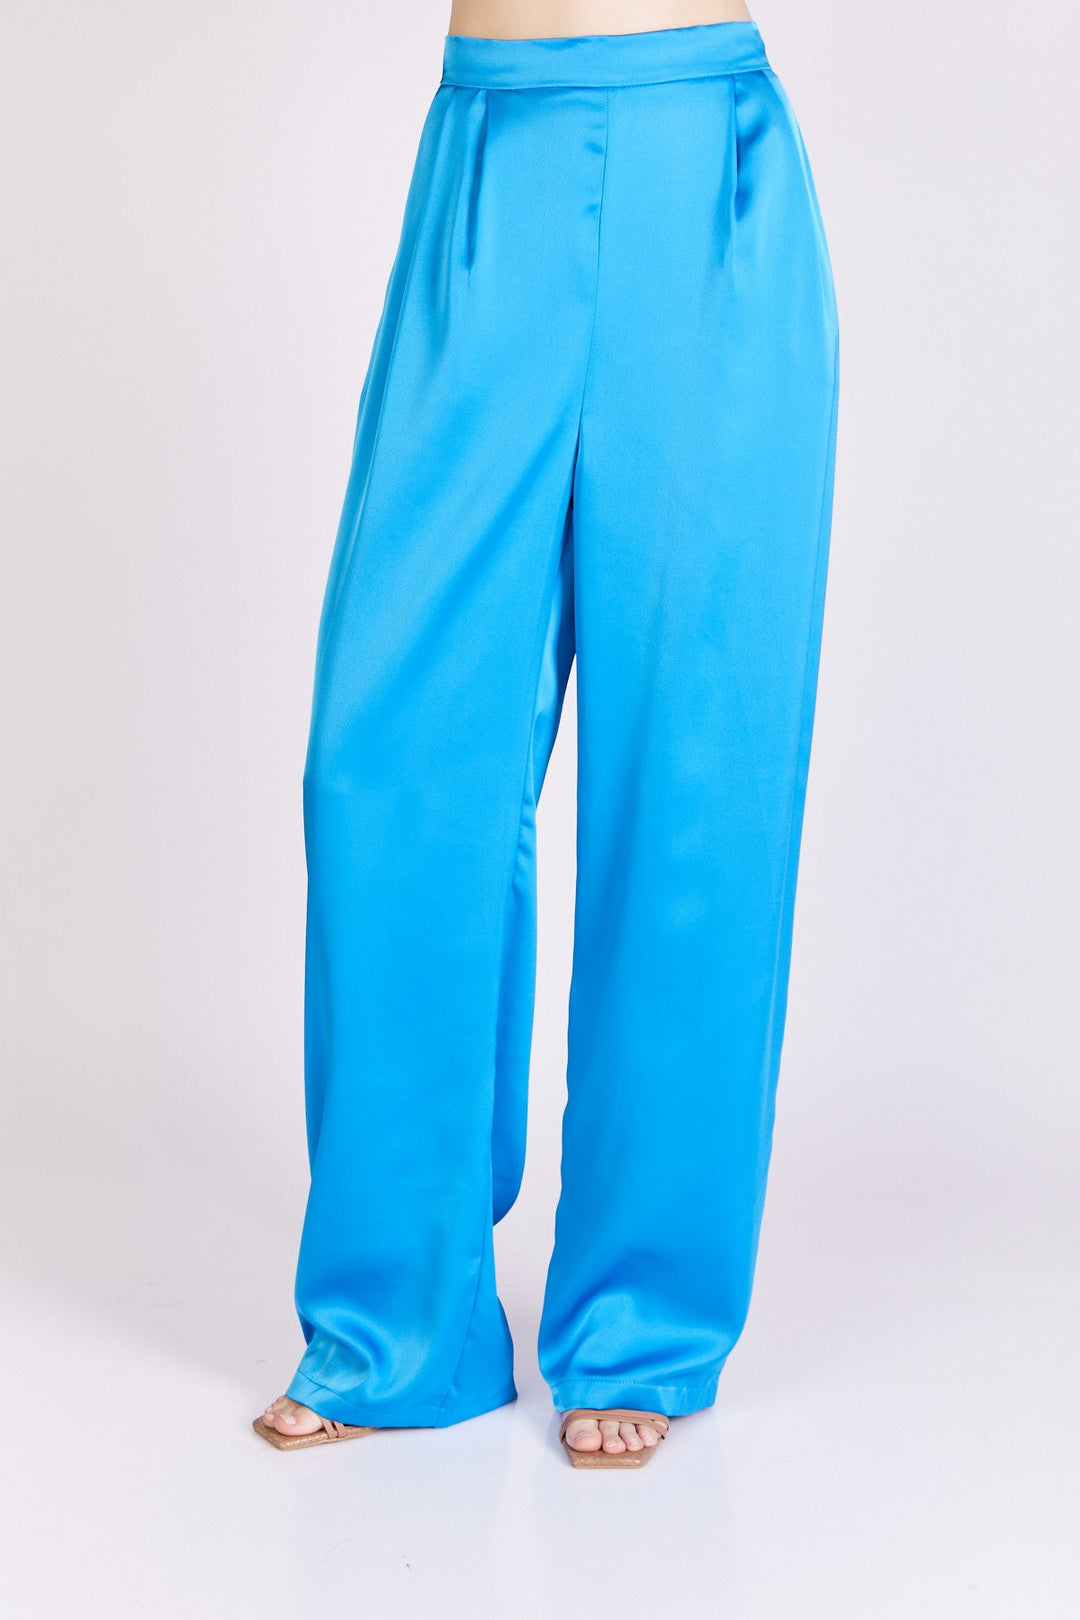 מכנסי מונרו בצבע כחול - Dana Sidi